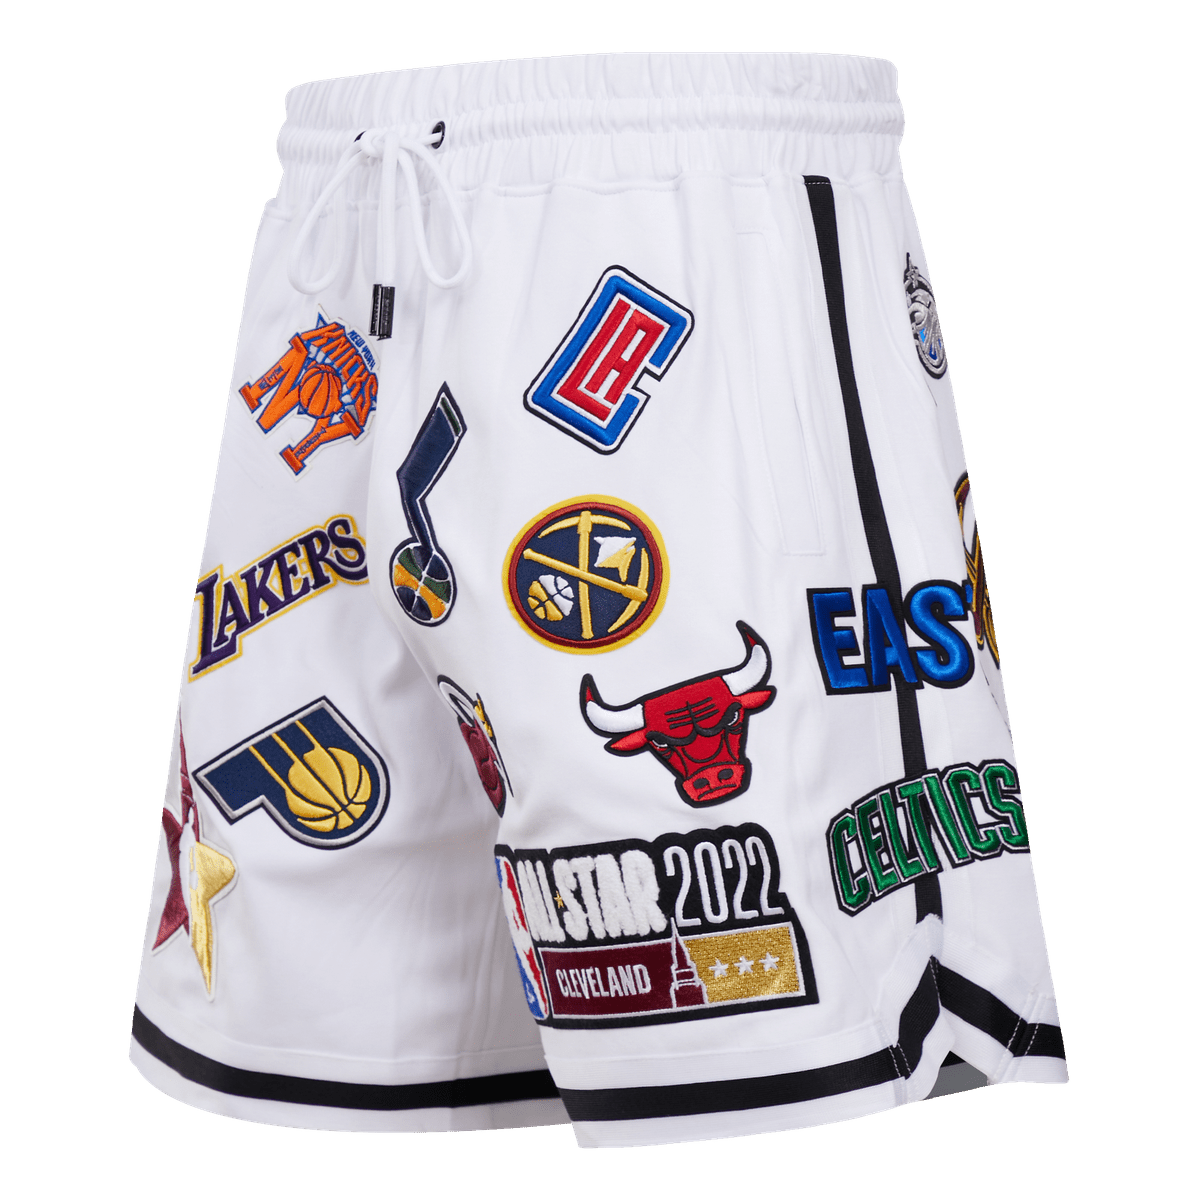 NBA Shorts - Supreme NBA teams - FREE SHIPPING!